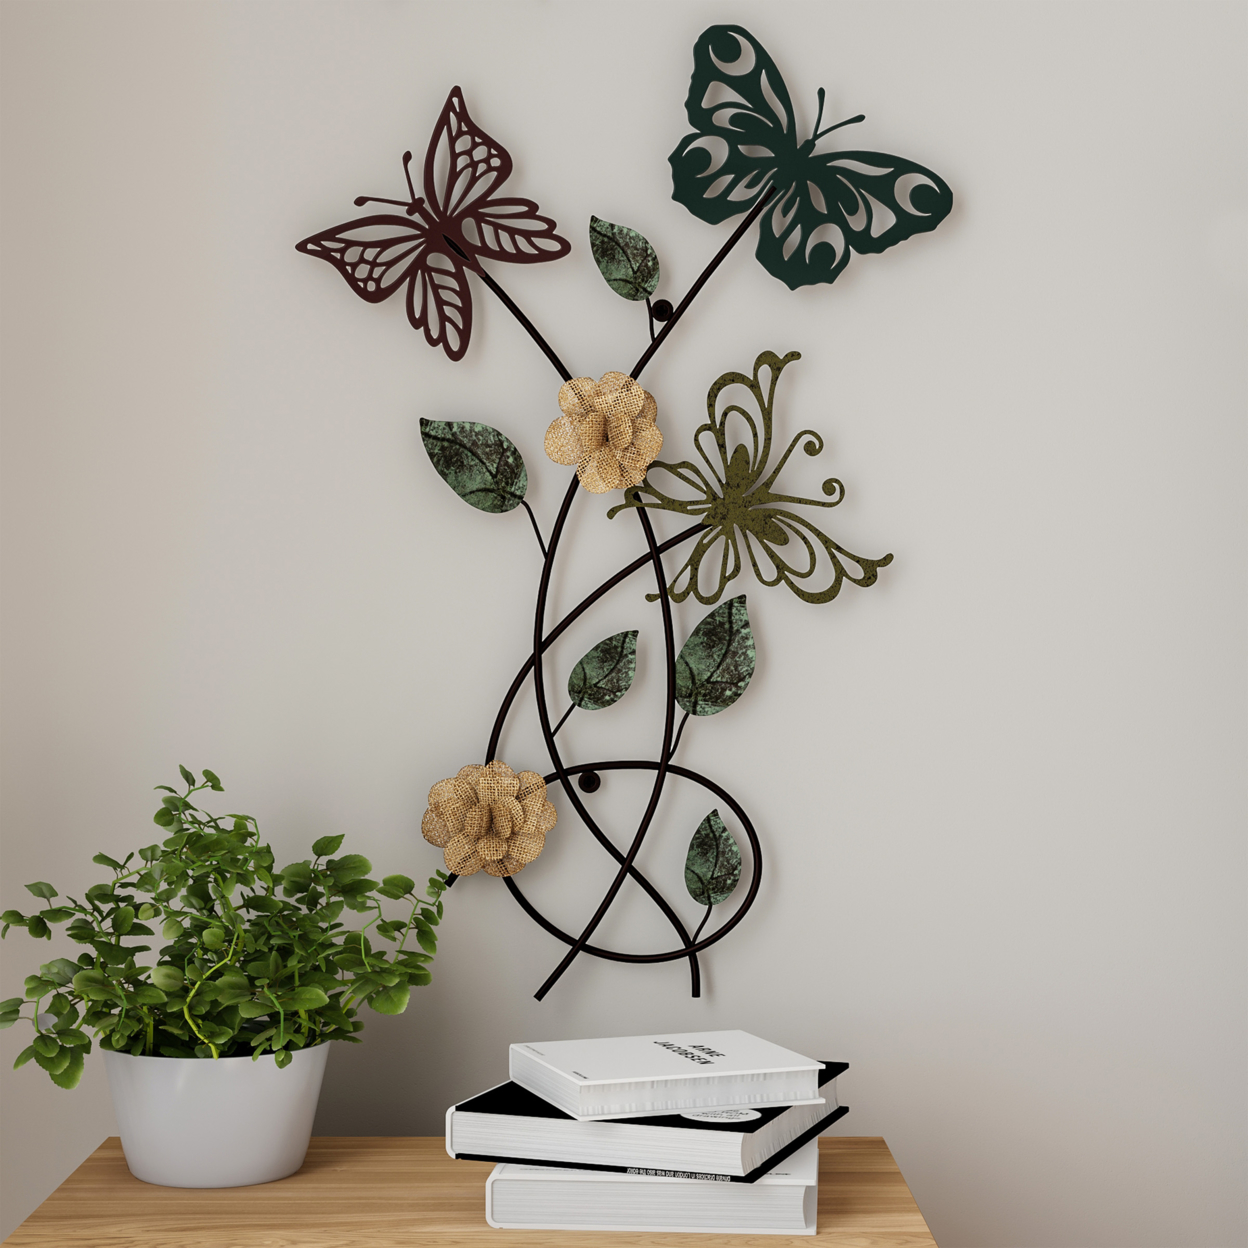 Garden Butterfly Metal Wall Art- Hand Painted Decorative 3D Butterflies/Flowers